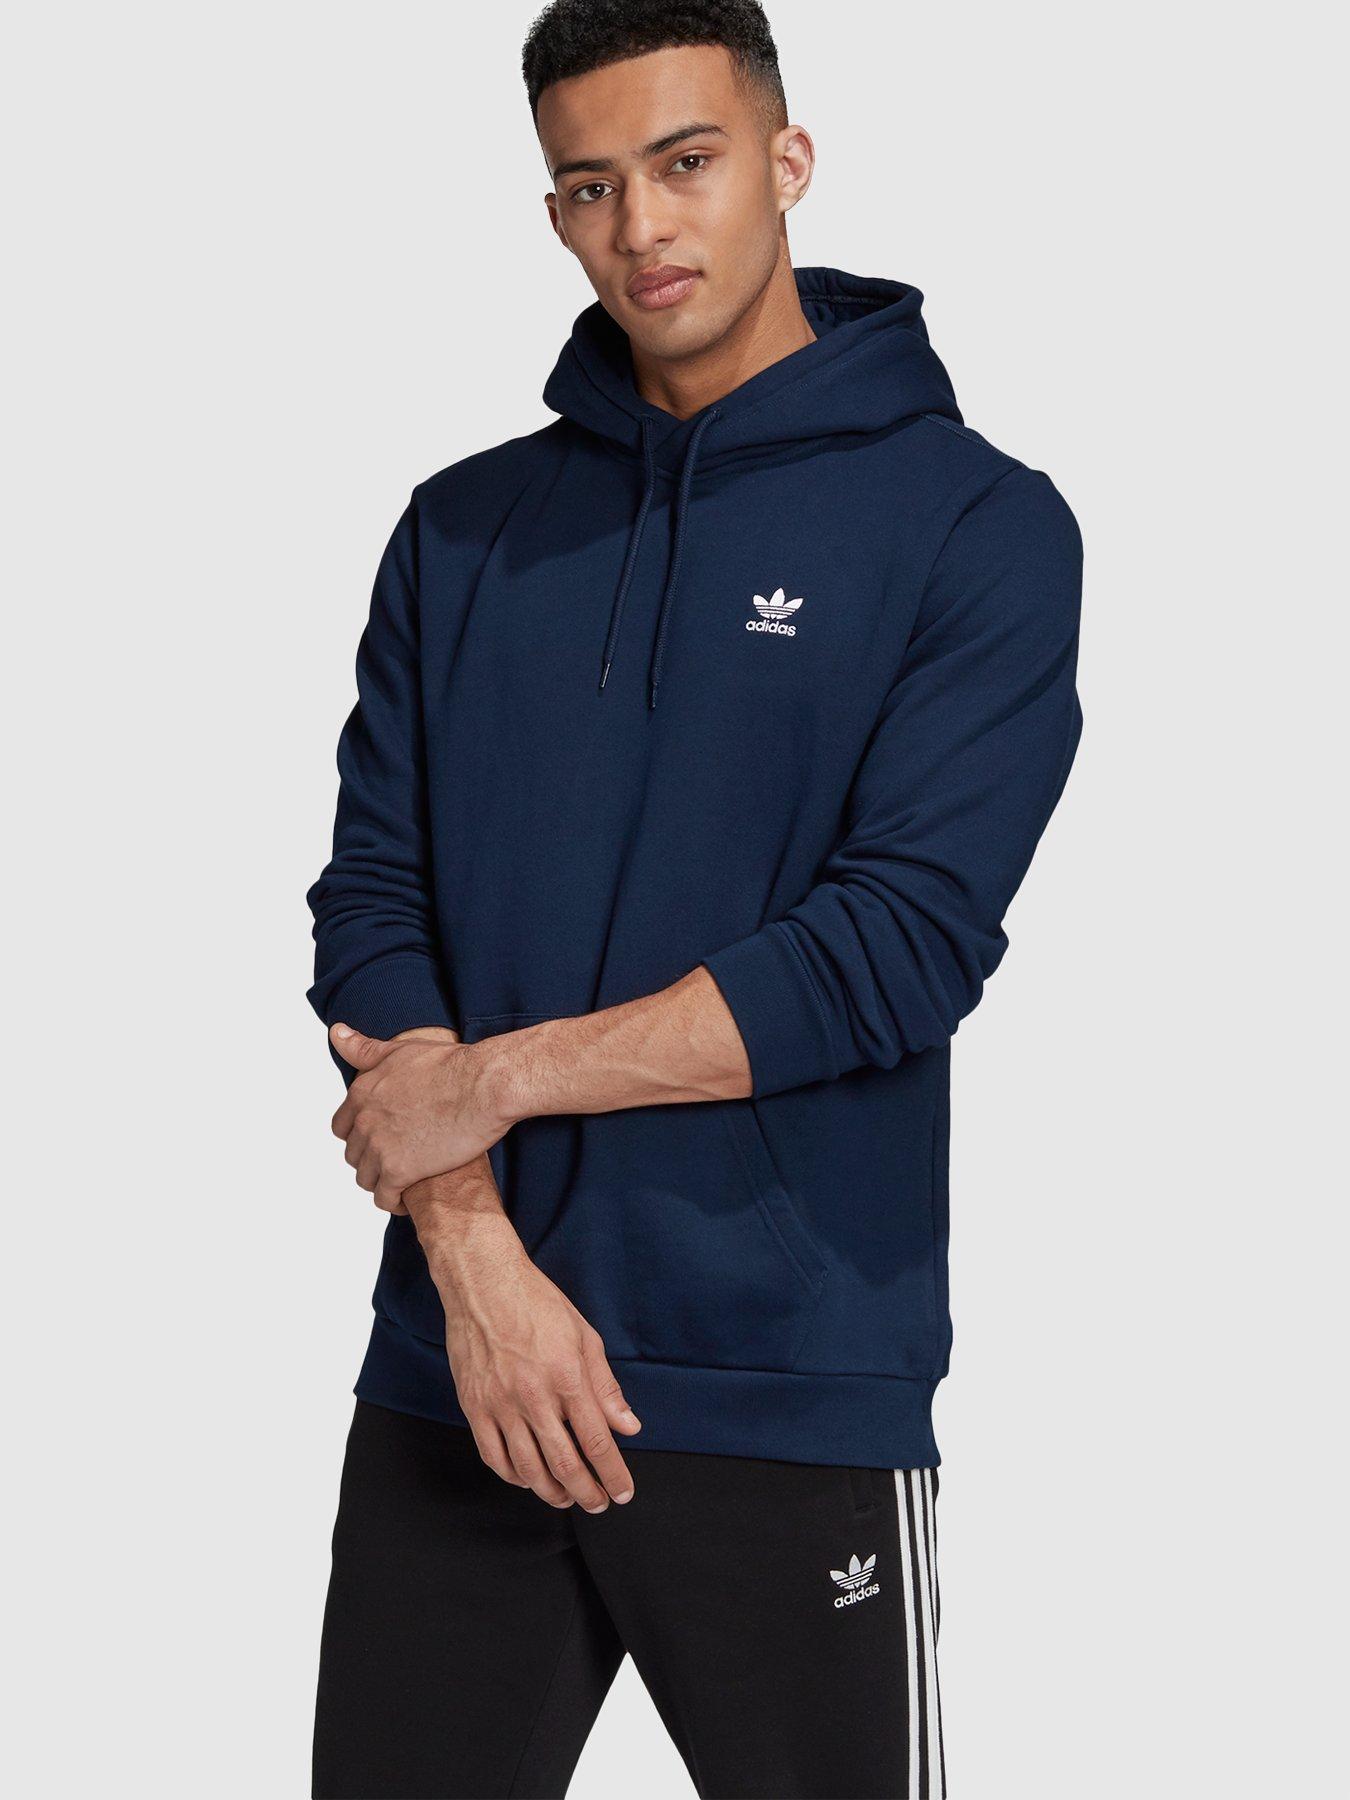 adidas men's essential hoodie